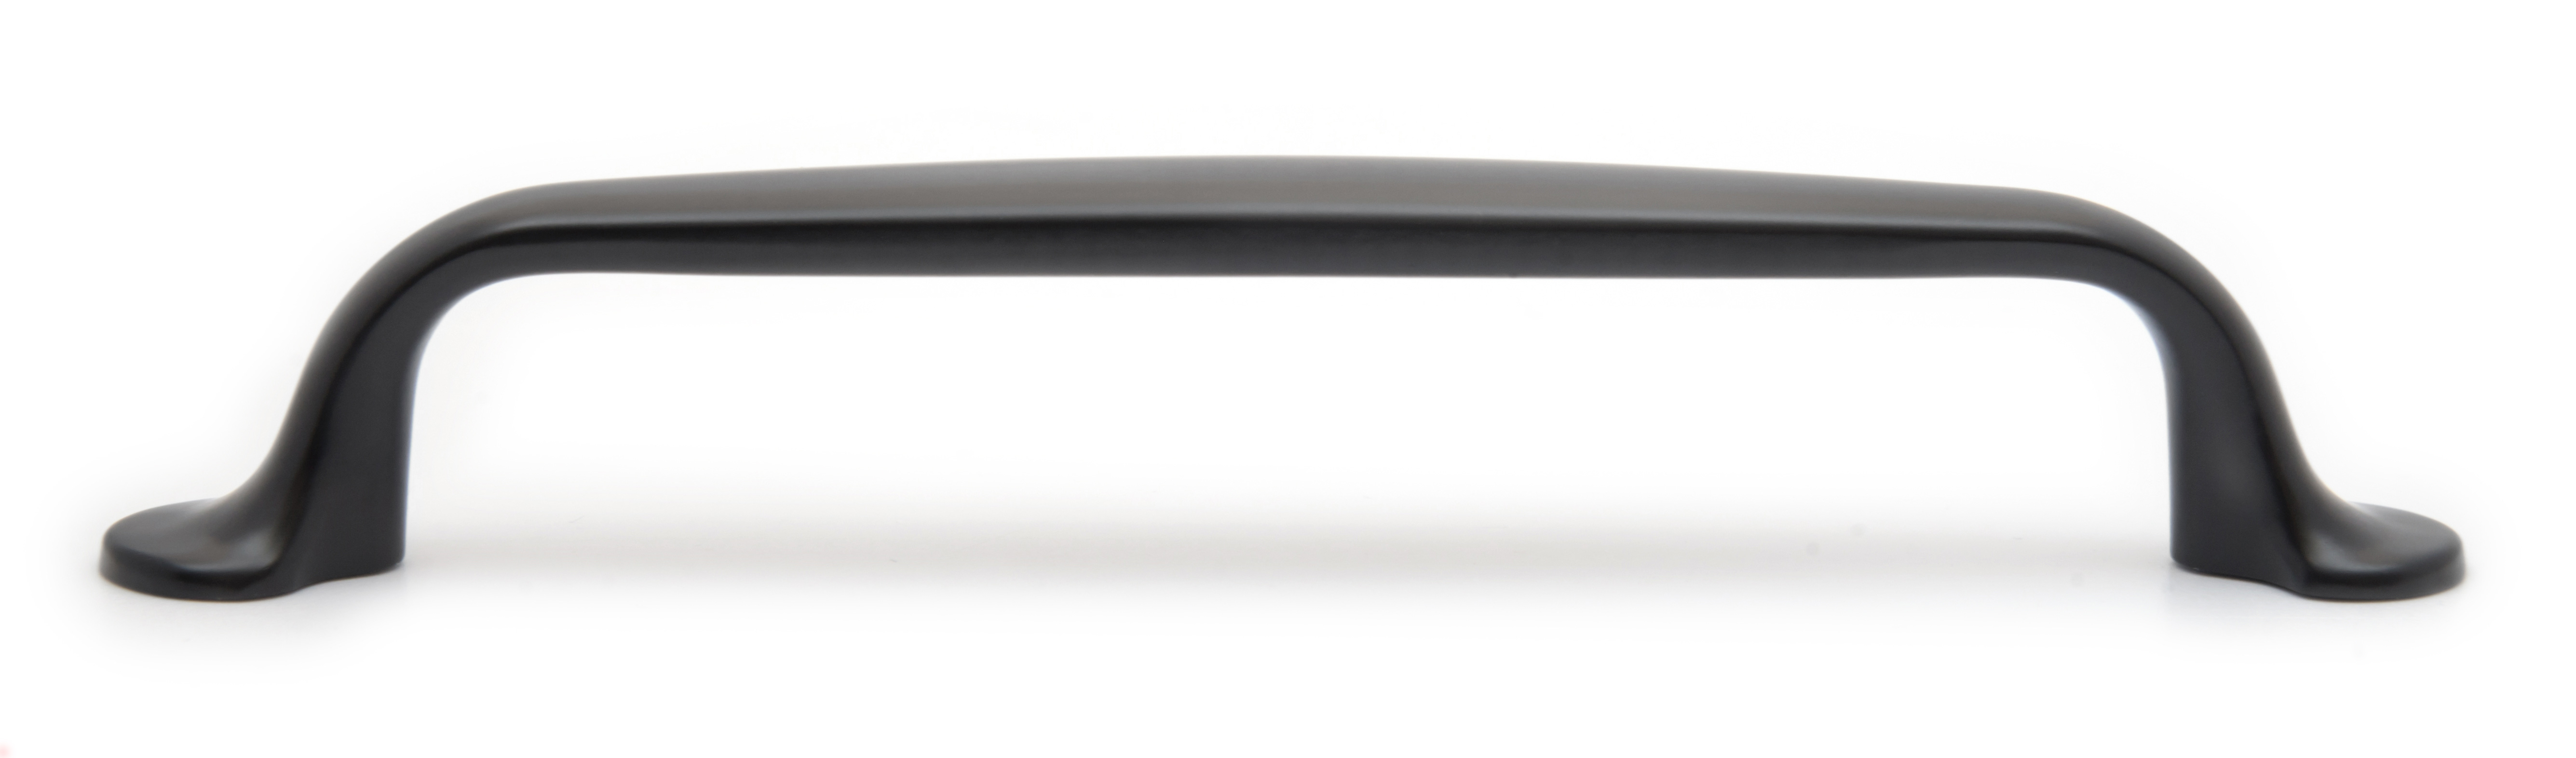 Ручка мебельная скоба 128мм черный матовый RS284BL.4/128 Boyard / 719880-1 / оптом и в розницу / мебельная фурнитура "ЛАВР"